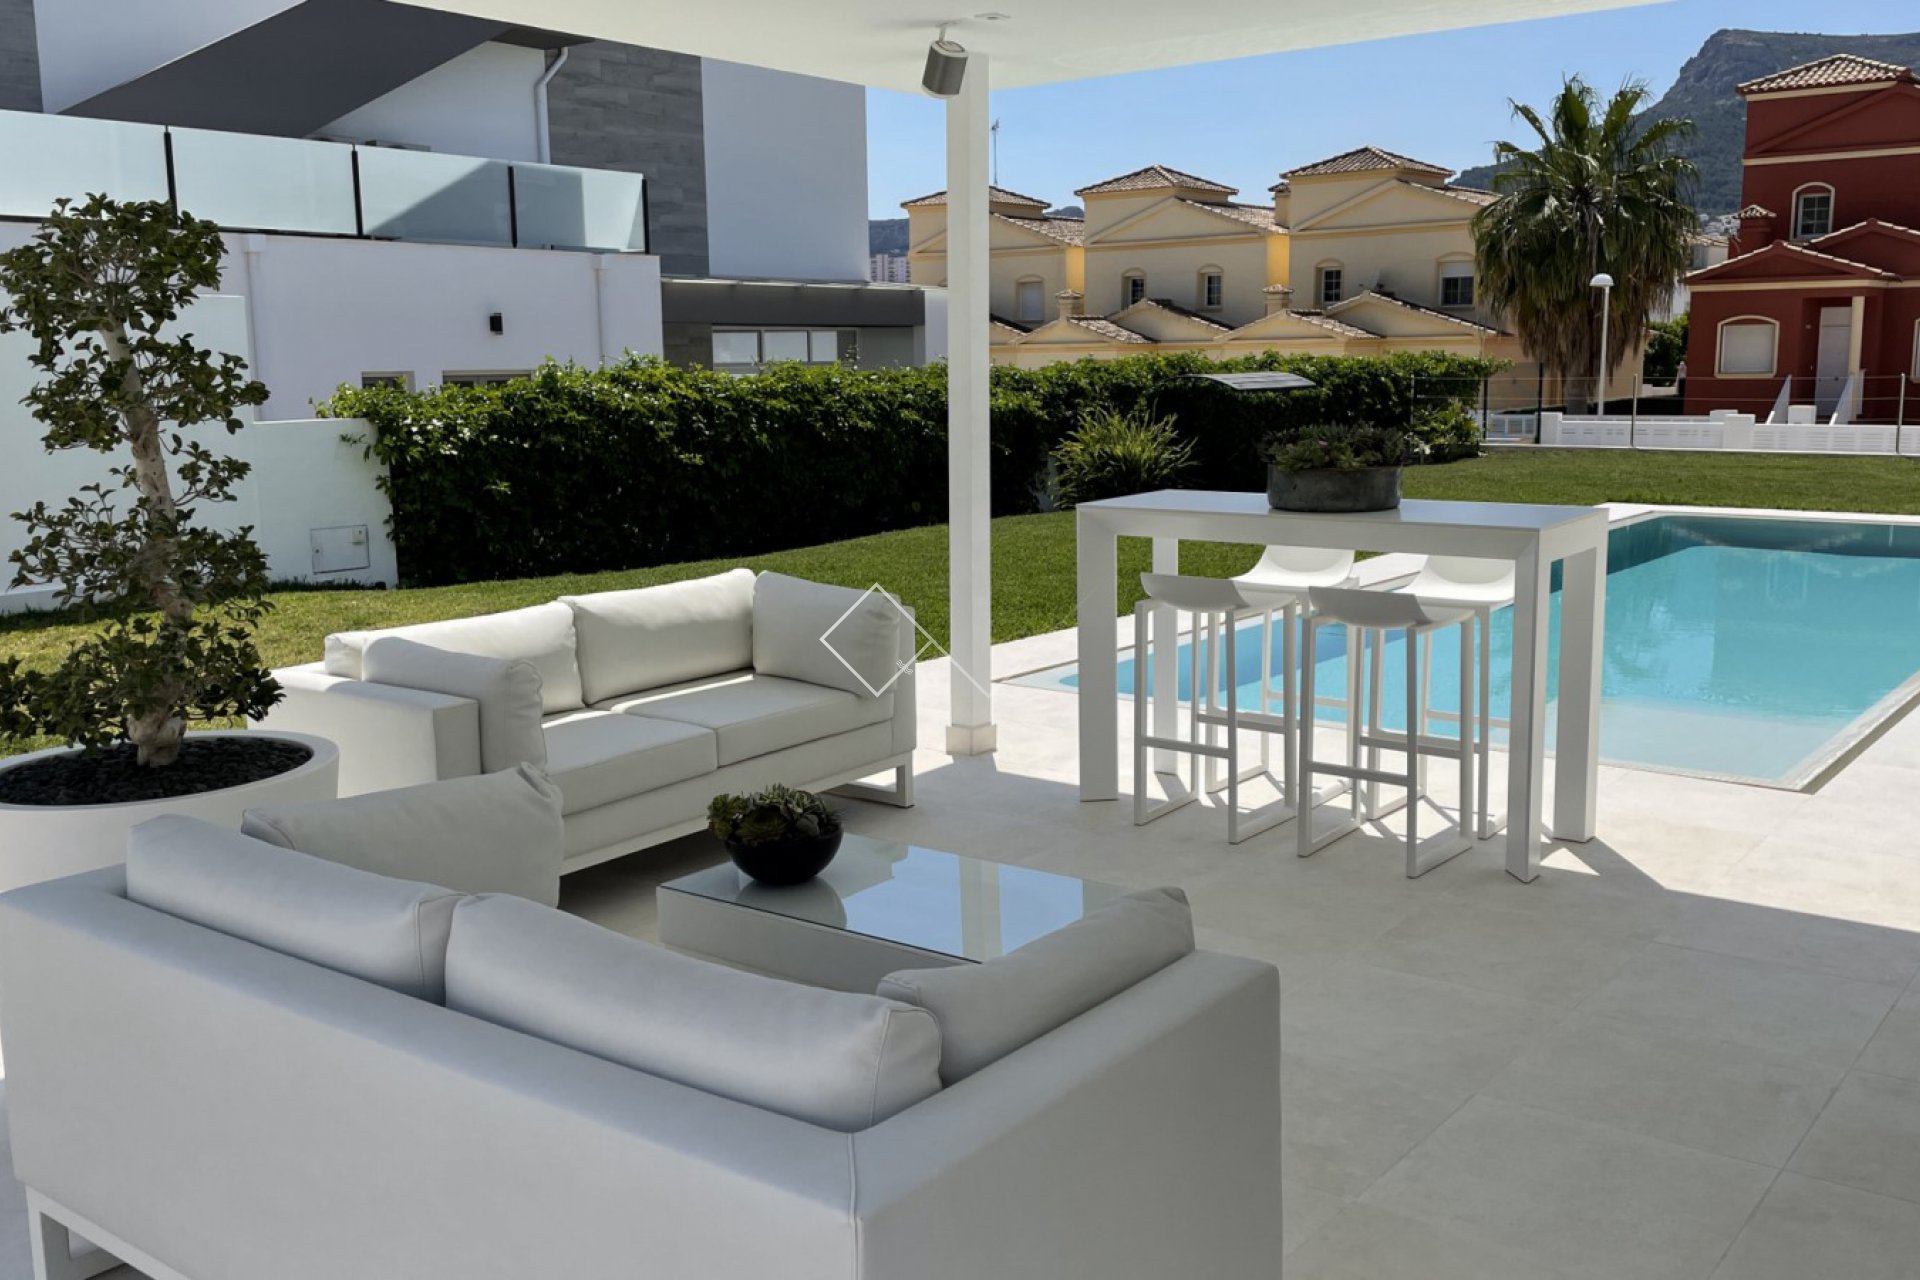 Exterior - Moderne Villa zum Verkauf in der Nähe von Strand und Zentrum von Calpe